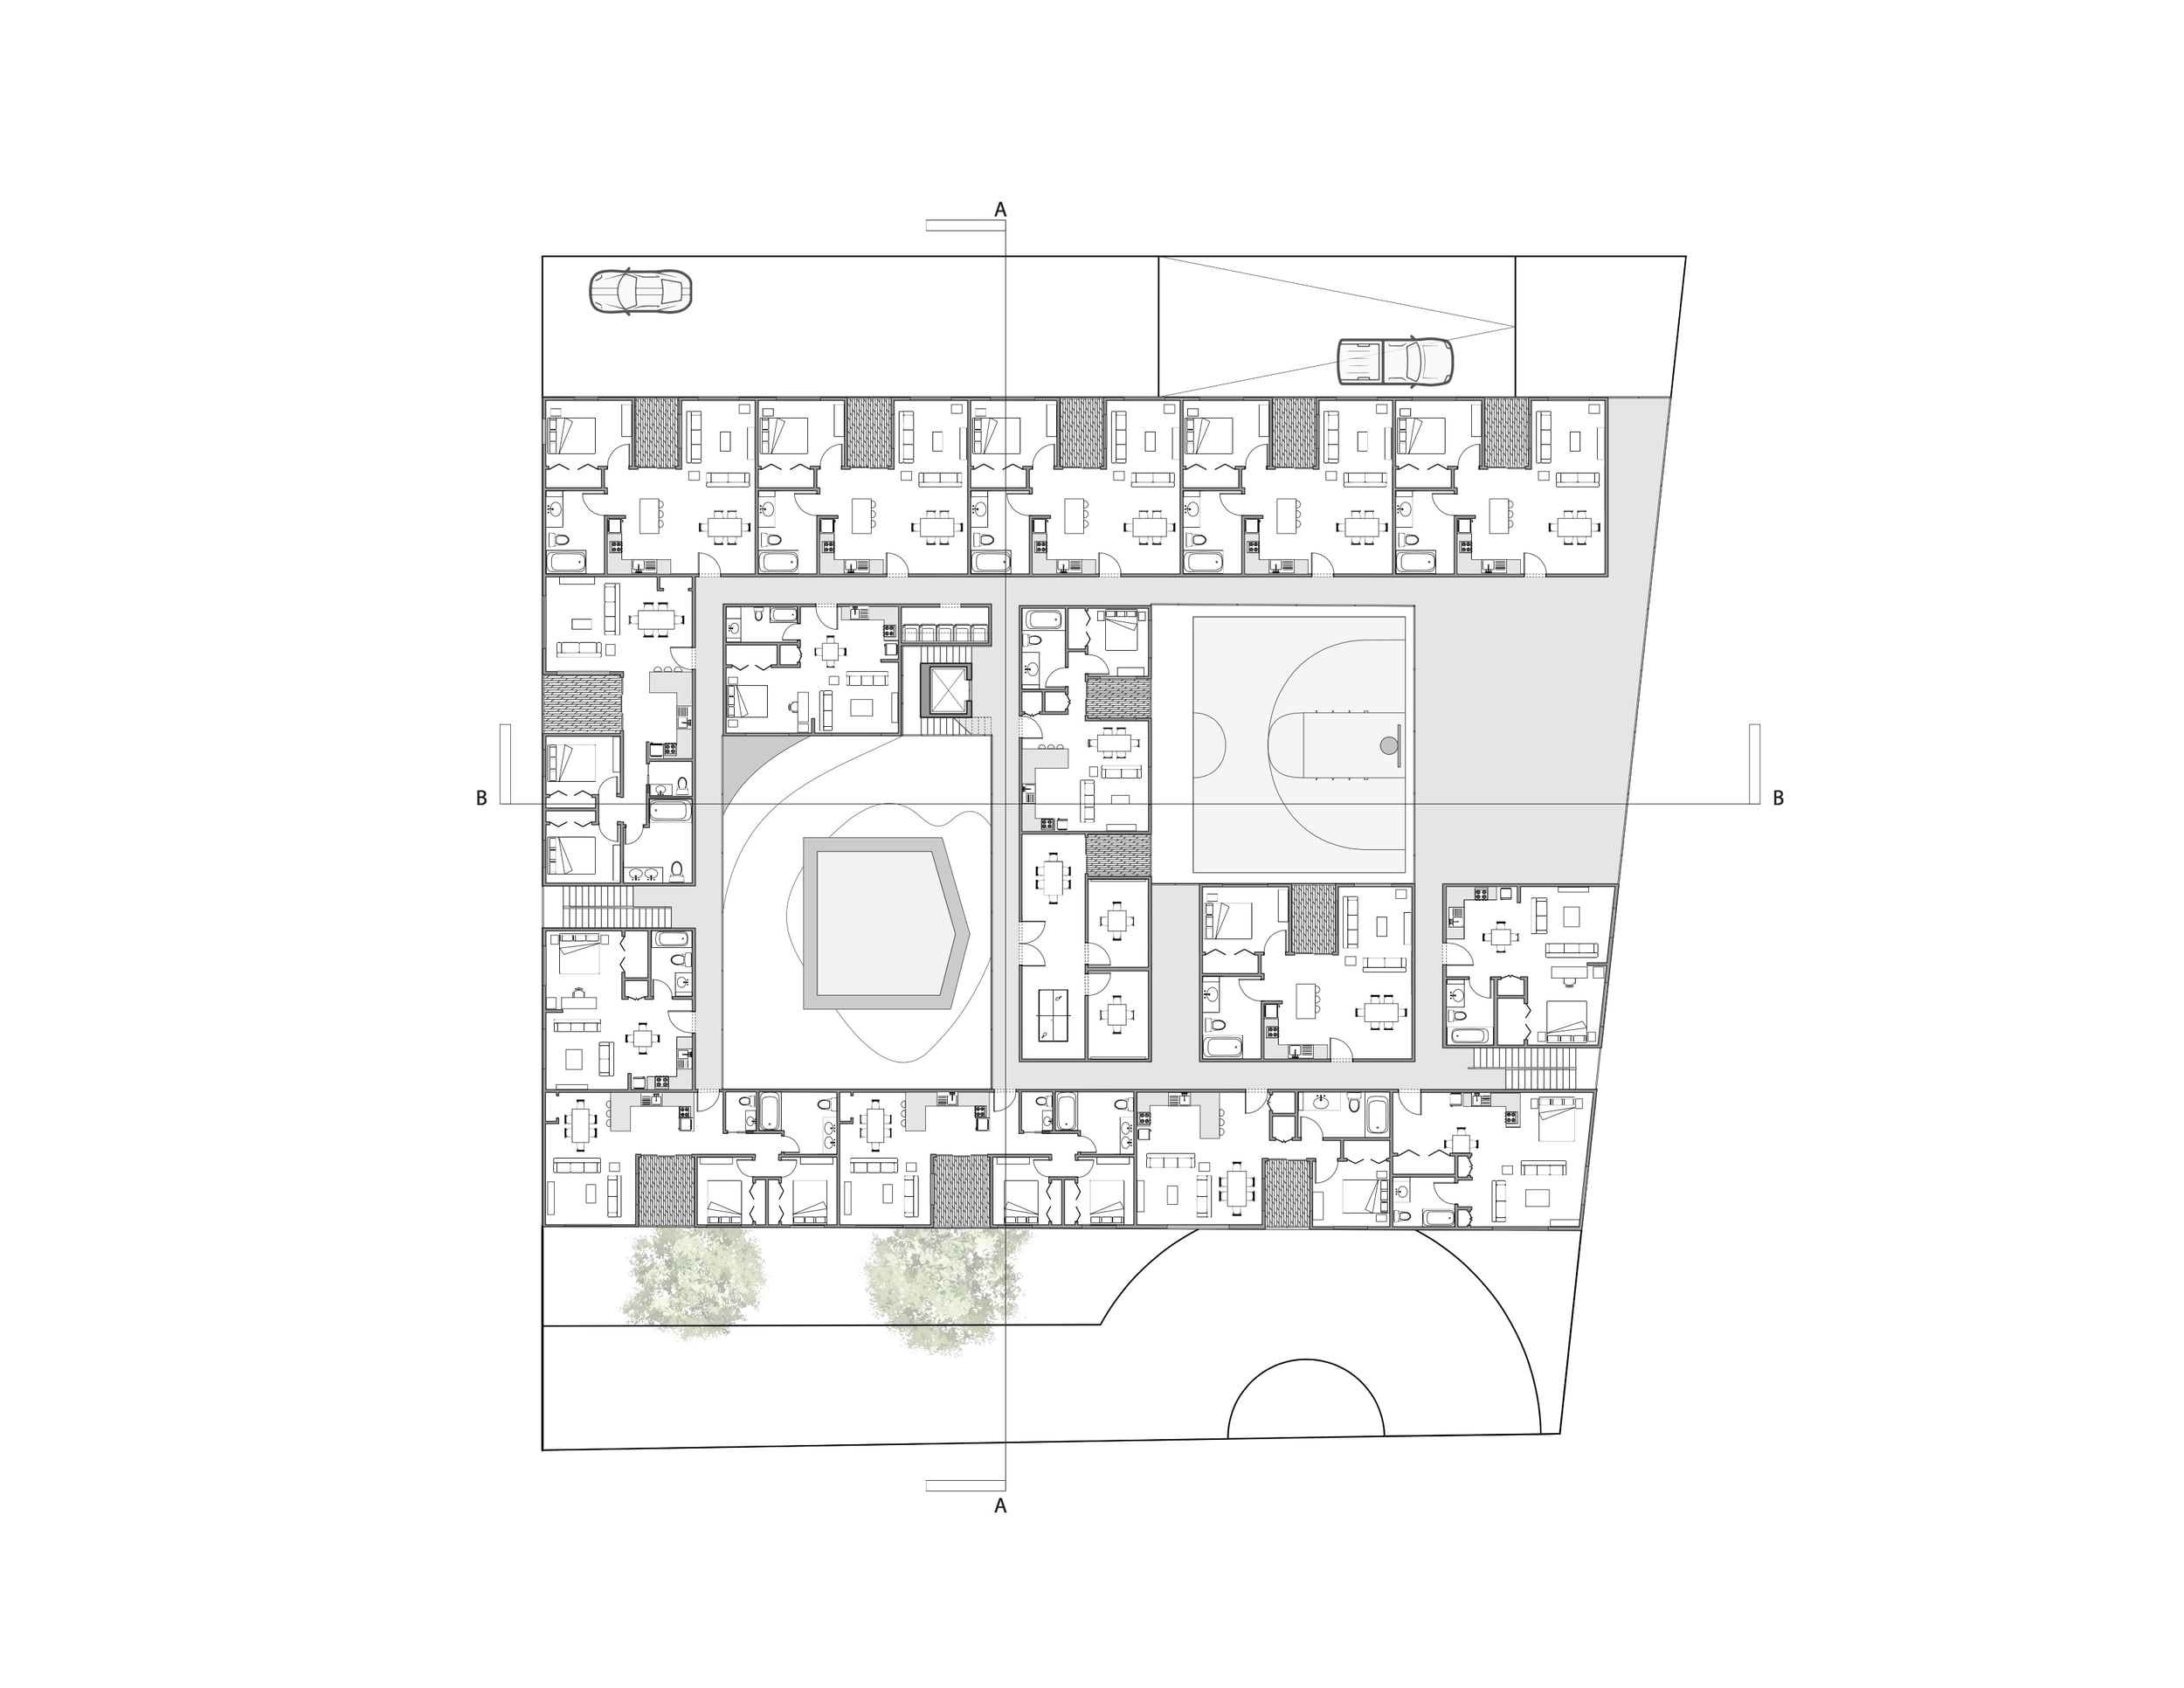  Second floor housing plan 